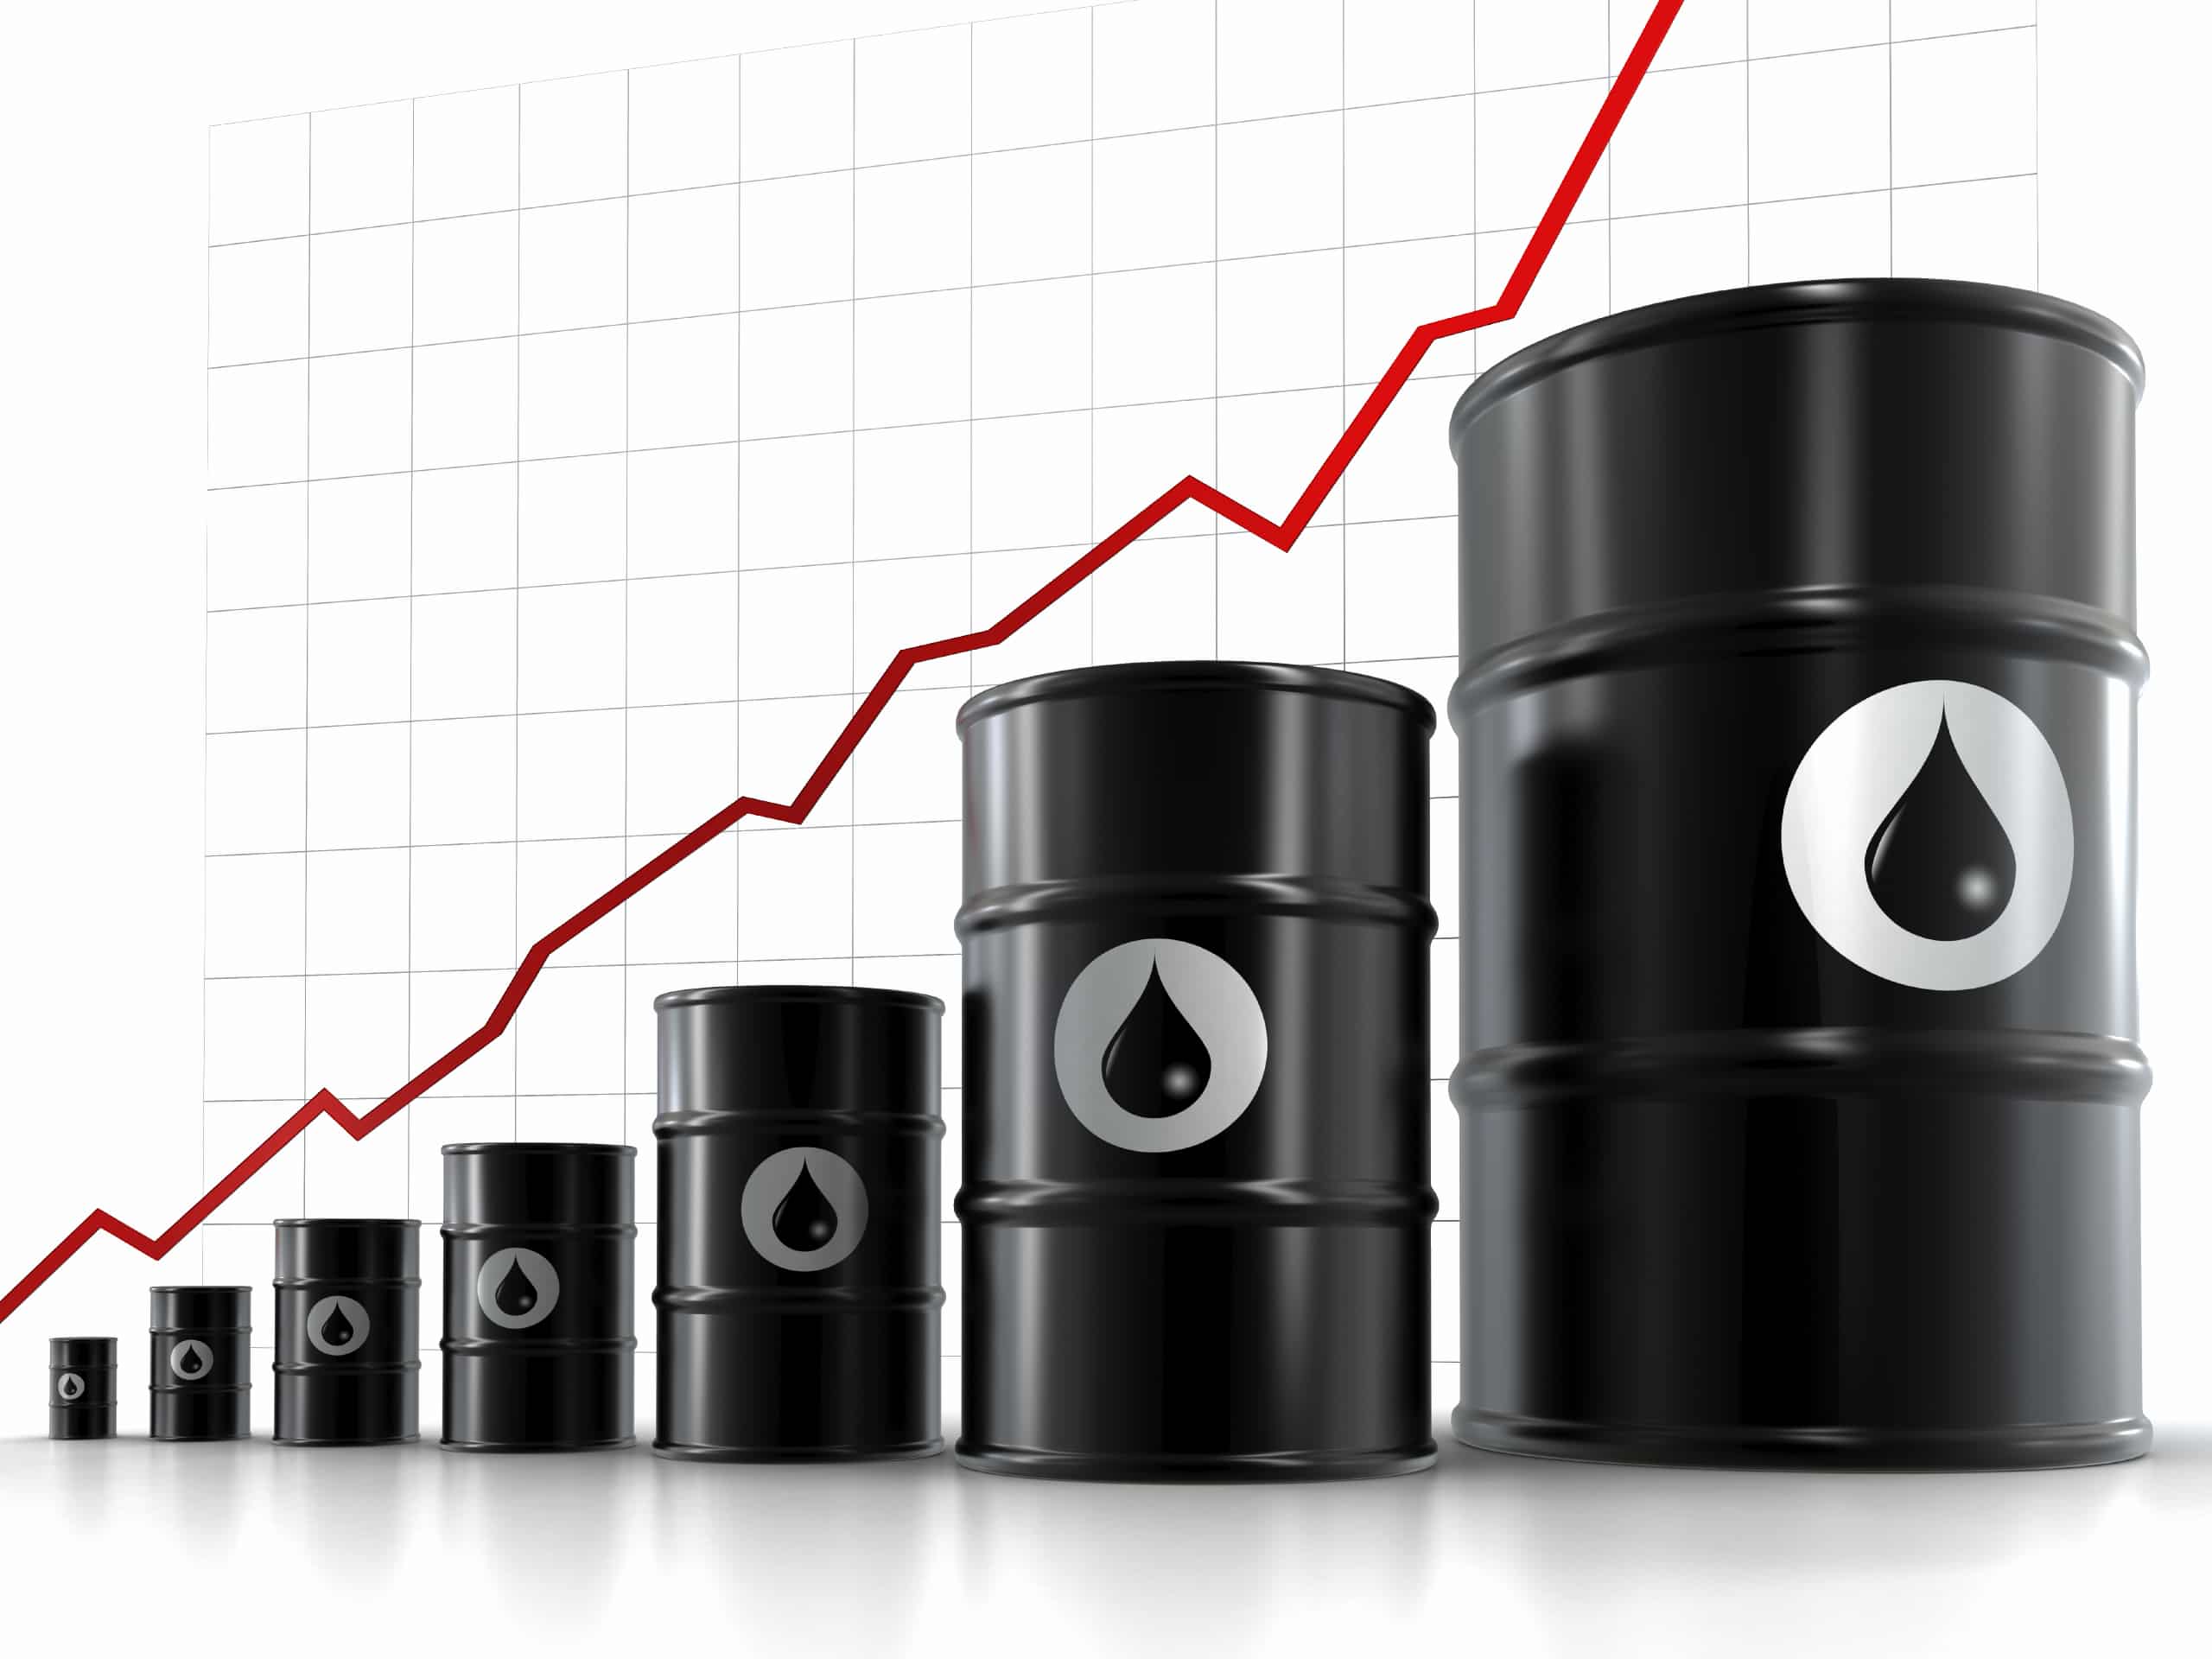 رشد ۱۷ درصدی قیمت نفت در یک ماه